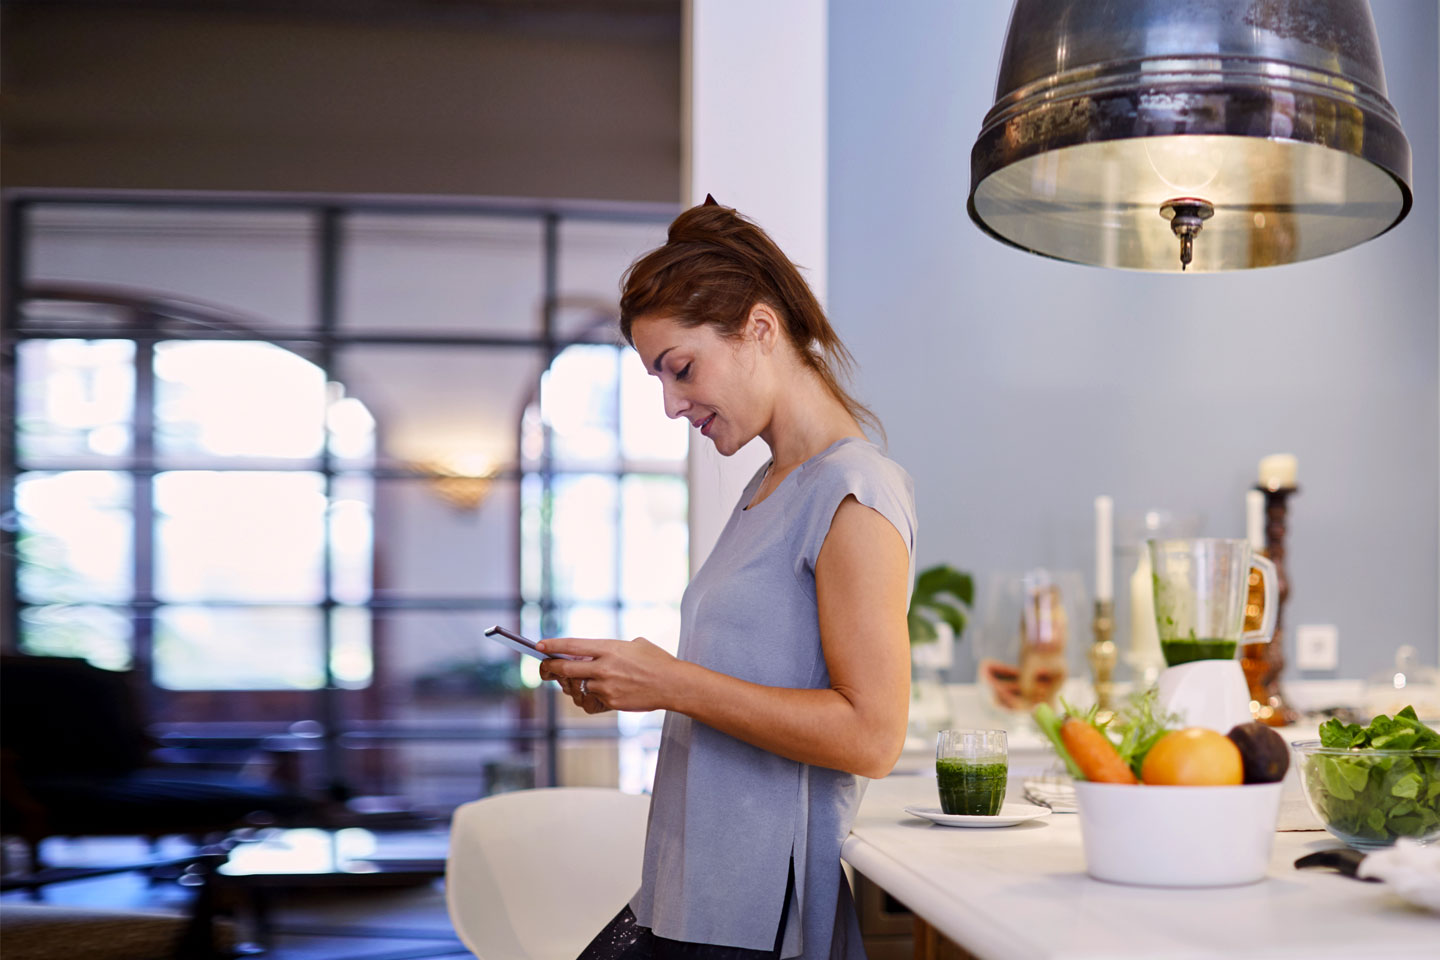 Eine Frau steht in ihrer Küche an die Ablage gelehnt und schaut aufs Handy.